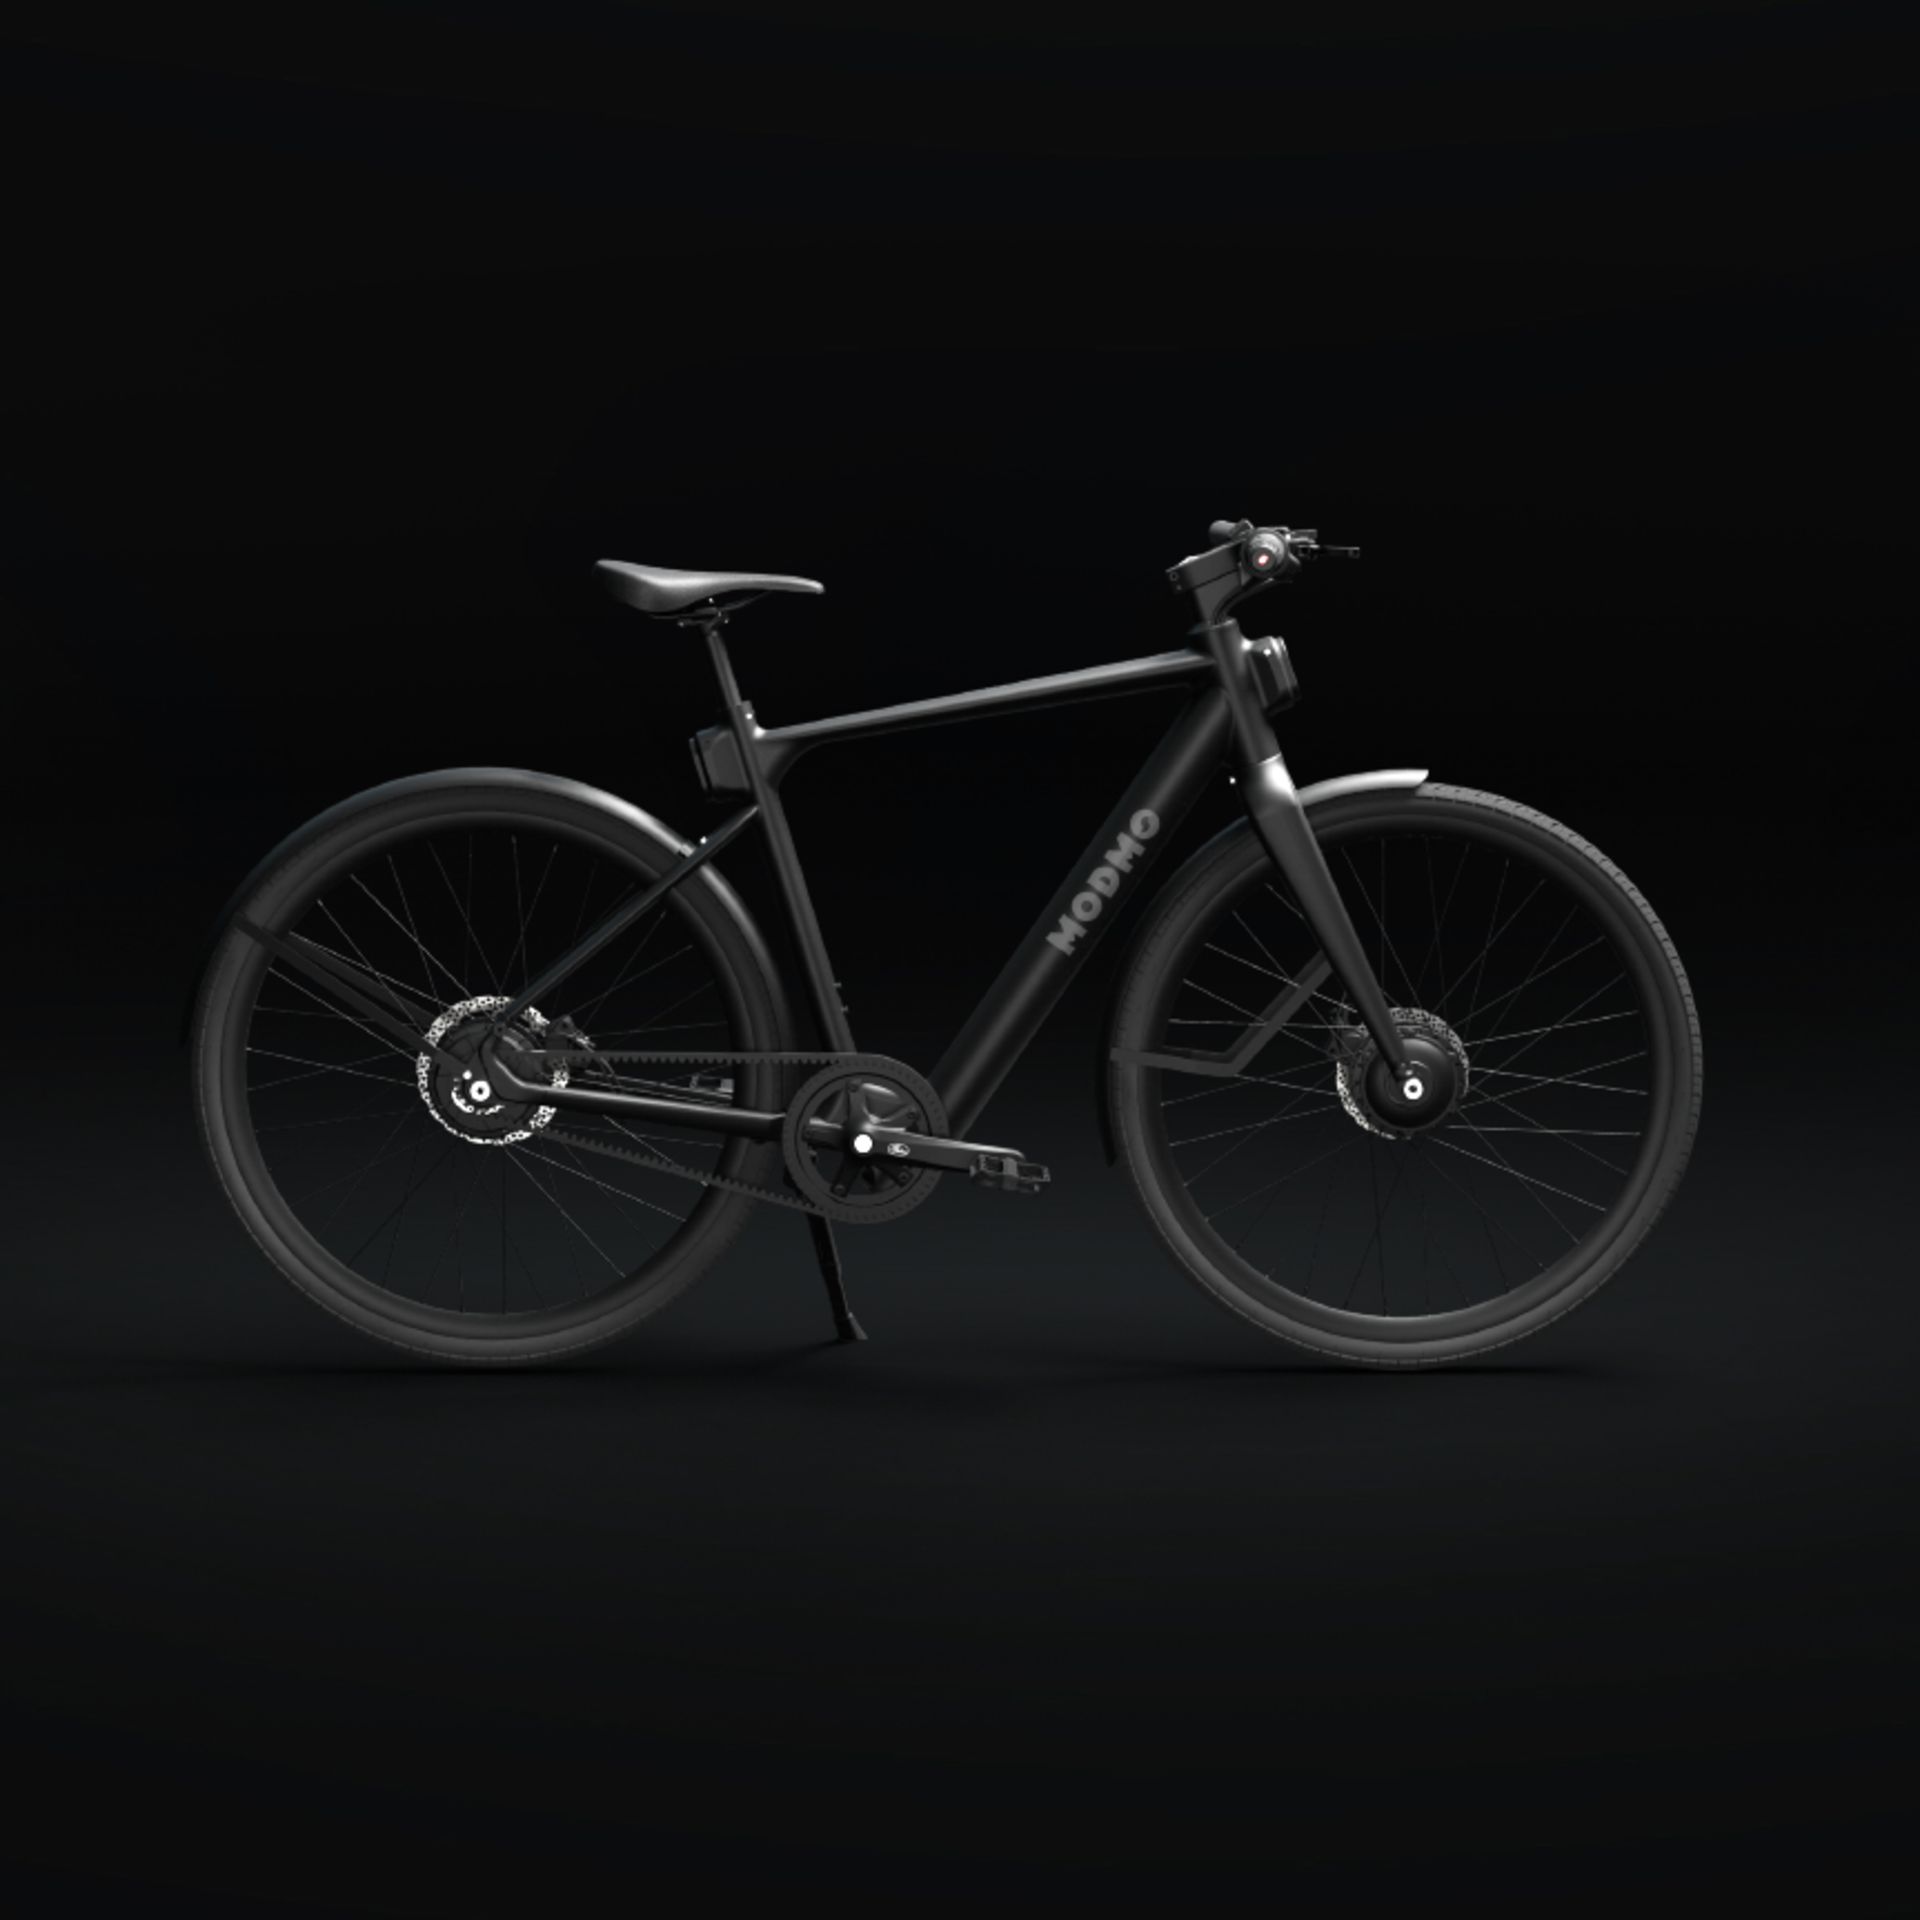 Modmo Saigon+ Electric Bicycle - RRP £2800 - Size L (Rider 175-190cm)